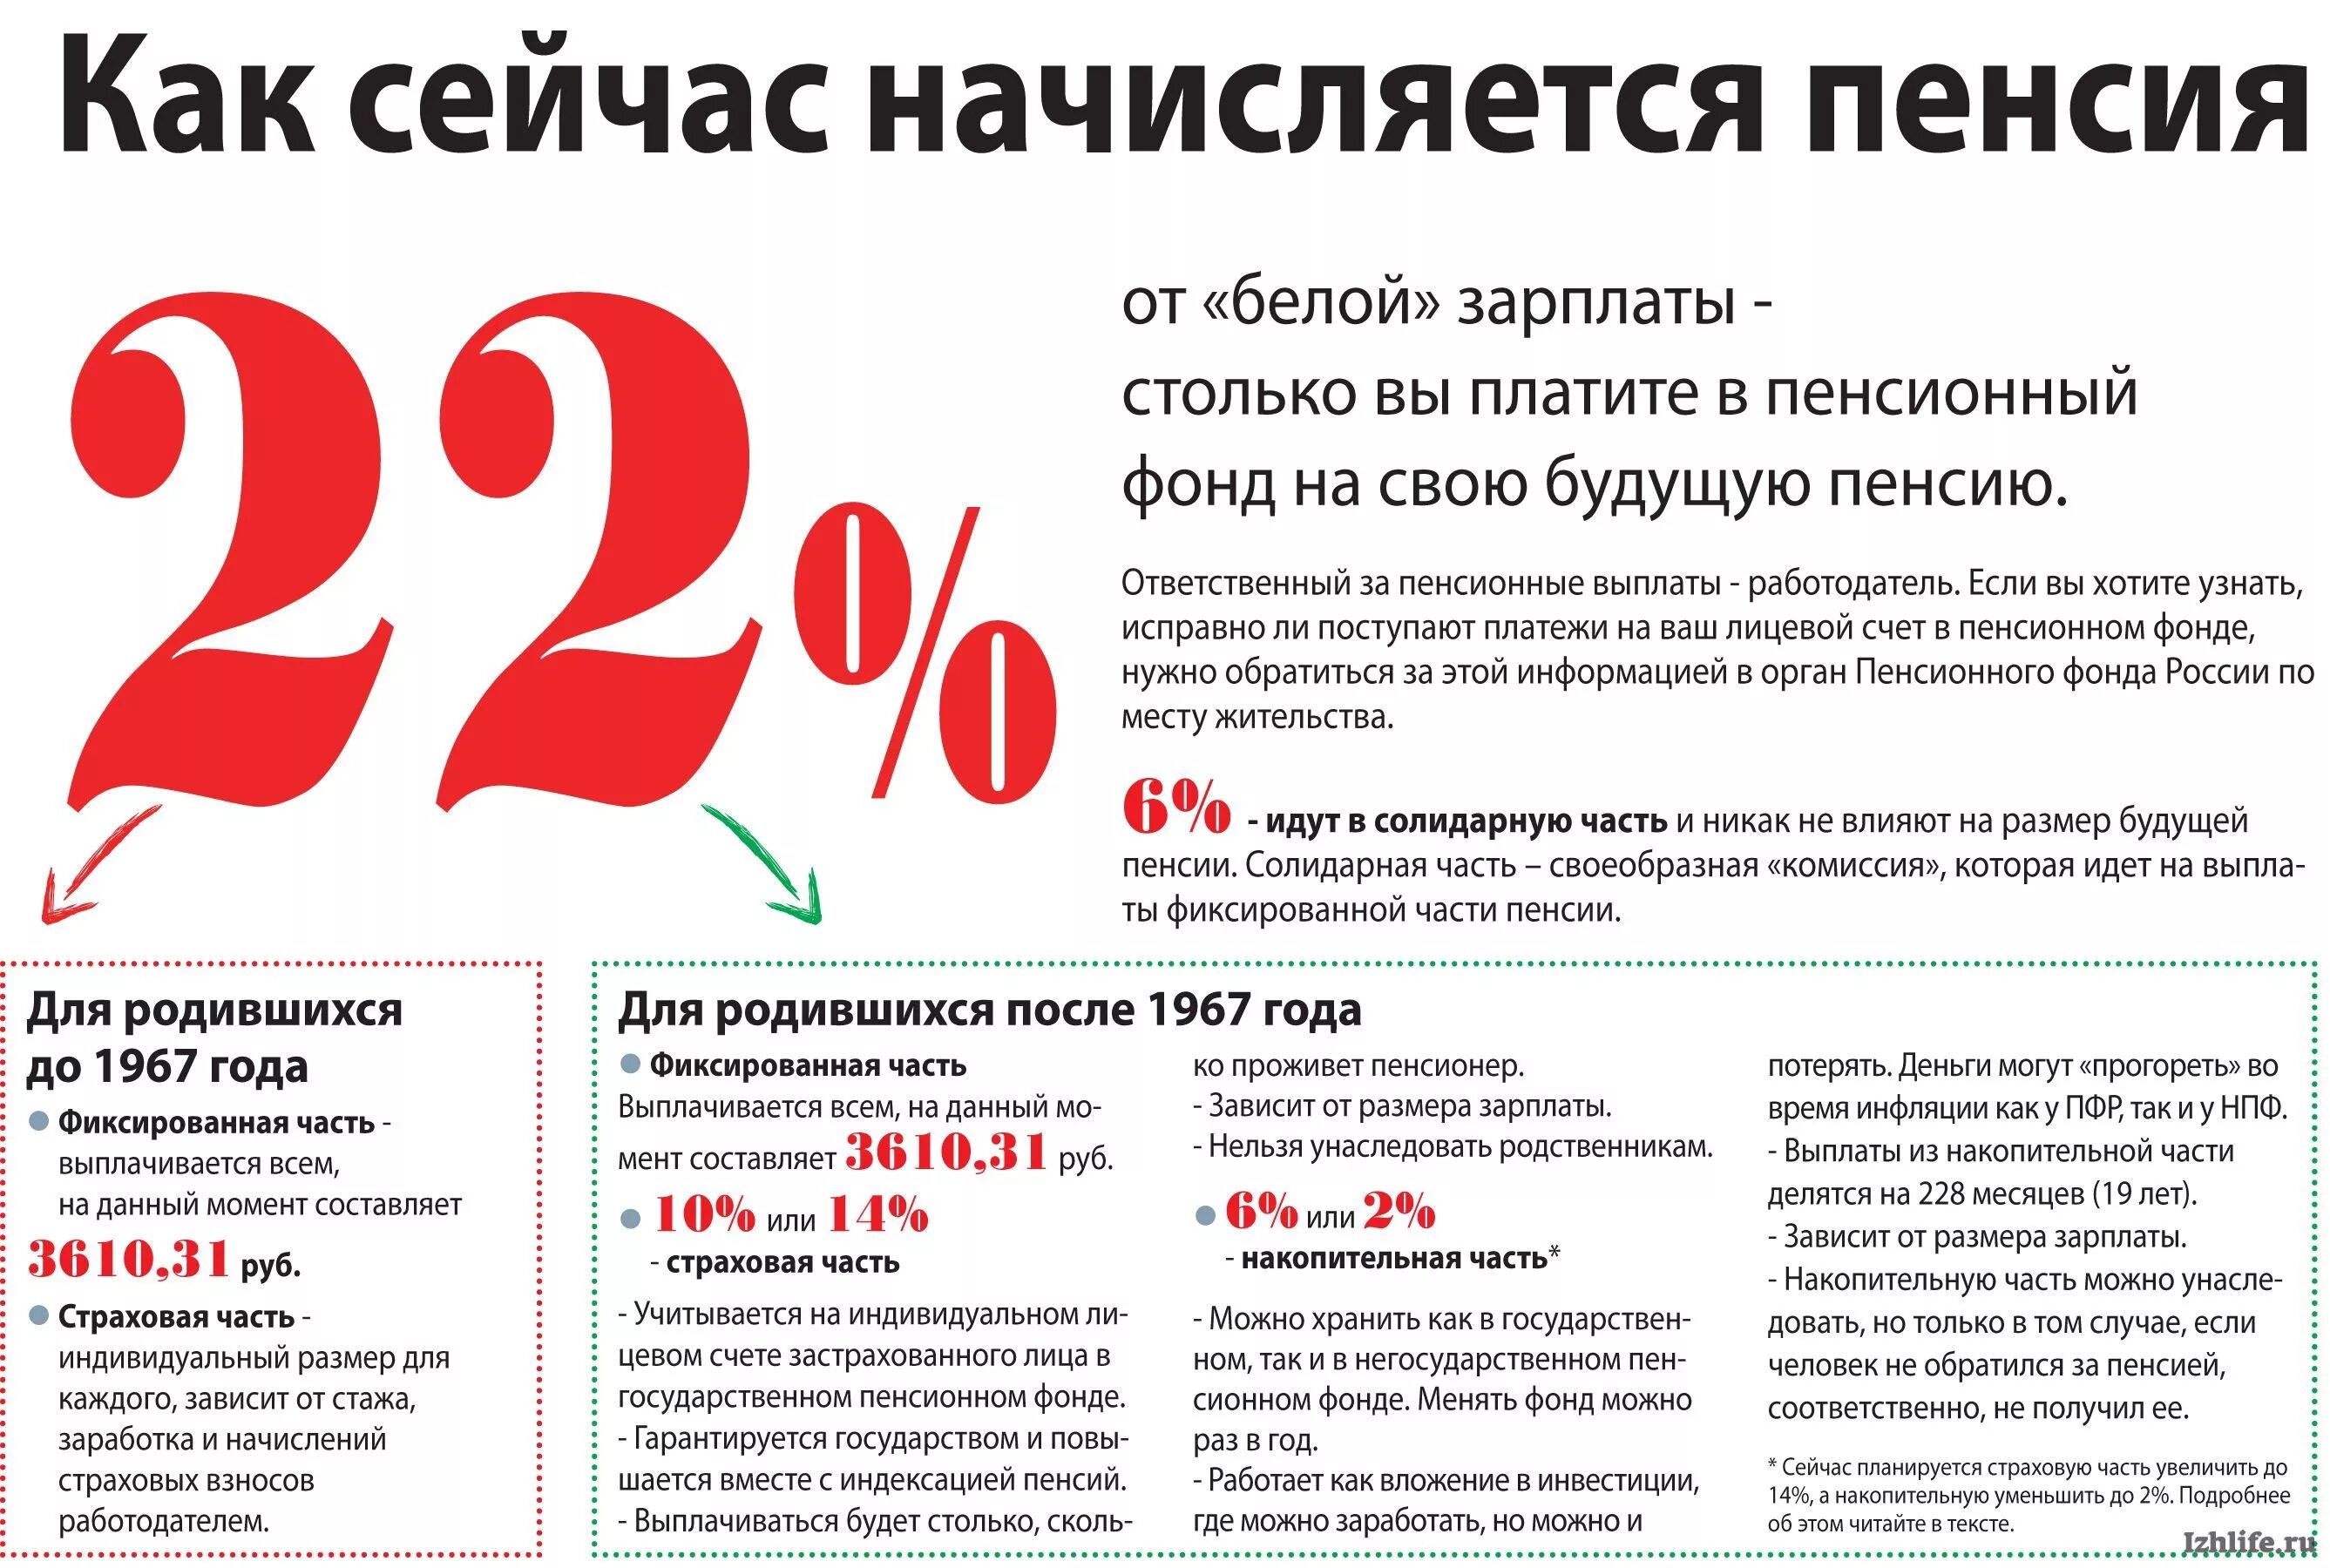 Пенсионное начисление в россии